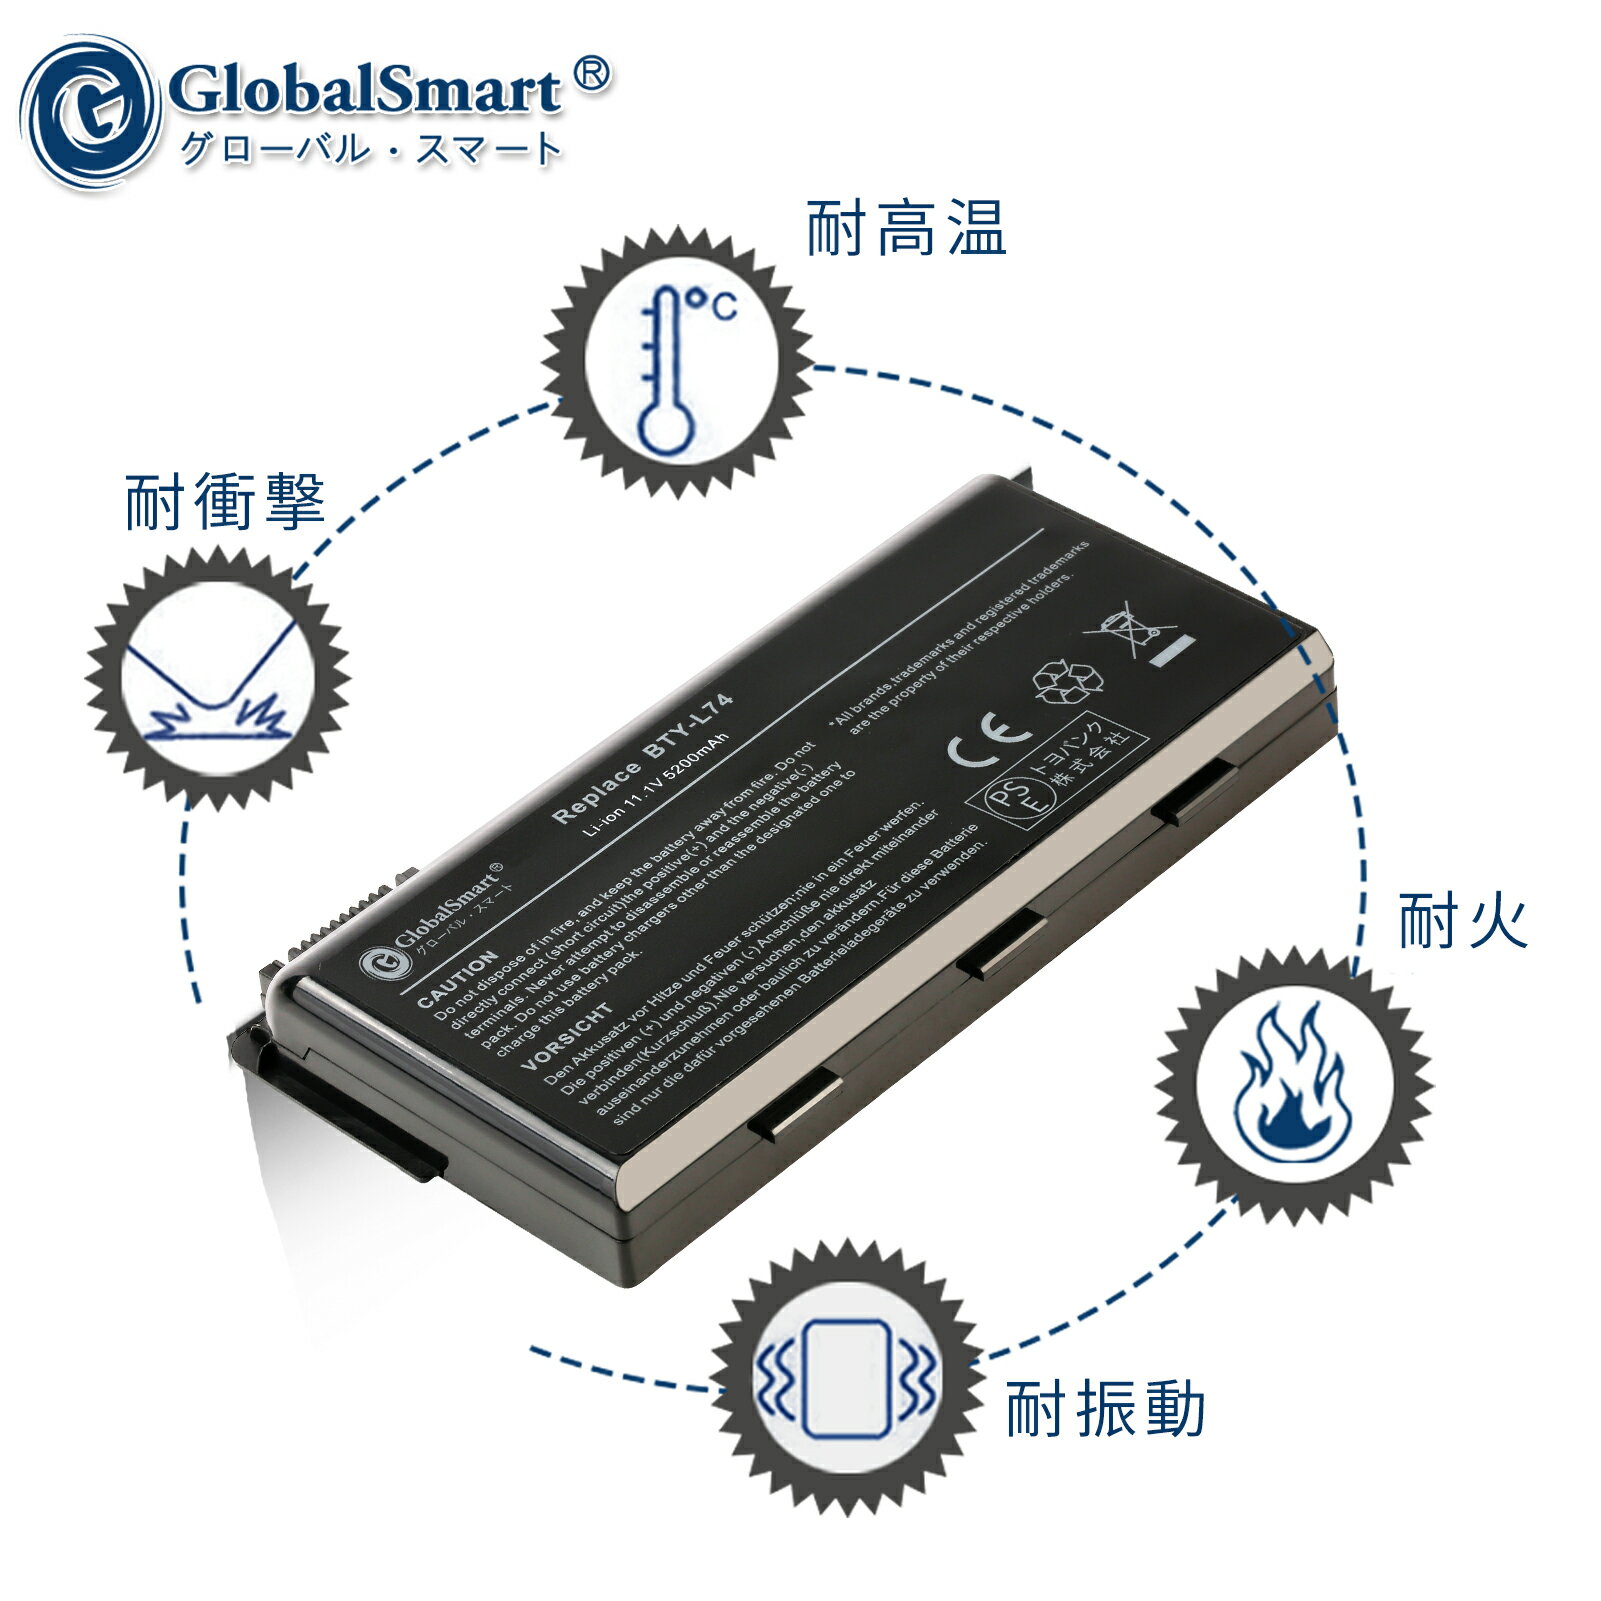 Globalsmart 新品 MSI A6205 WHY 大容量互換バッテリパック【5200mAh 11.1V】対応用 1年保証 高性能 PSE認証 互換バッテリー 3